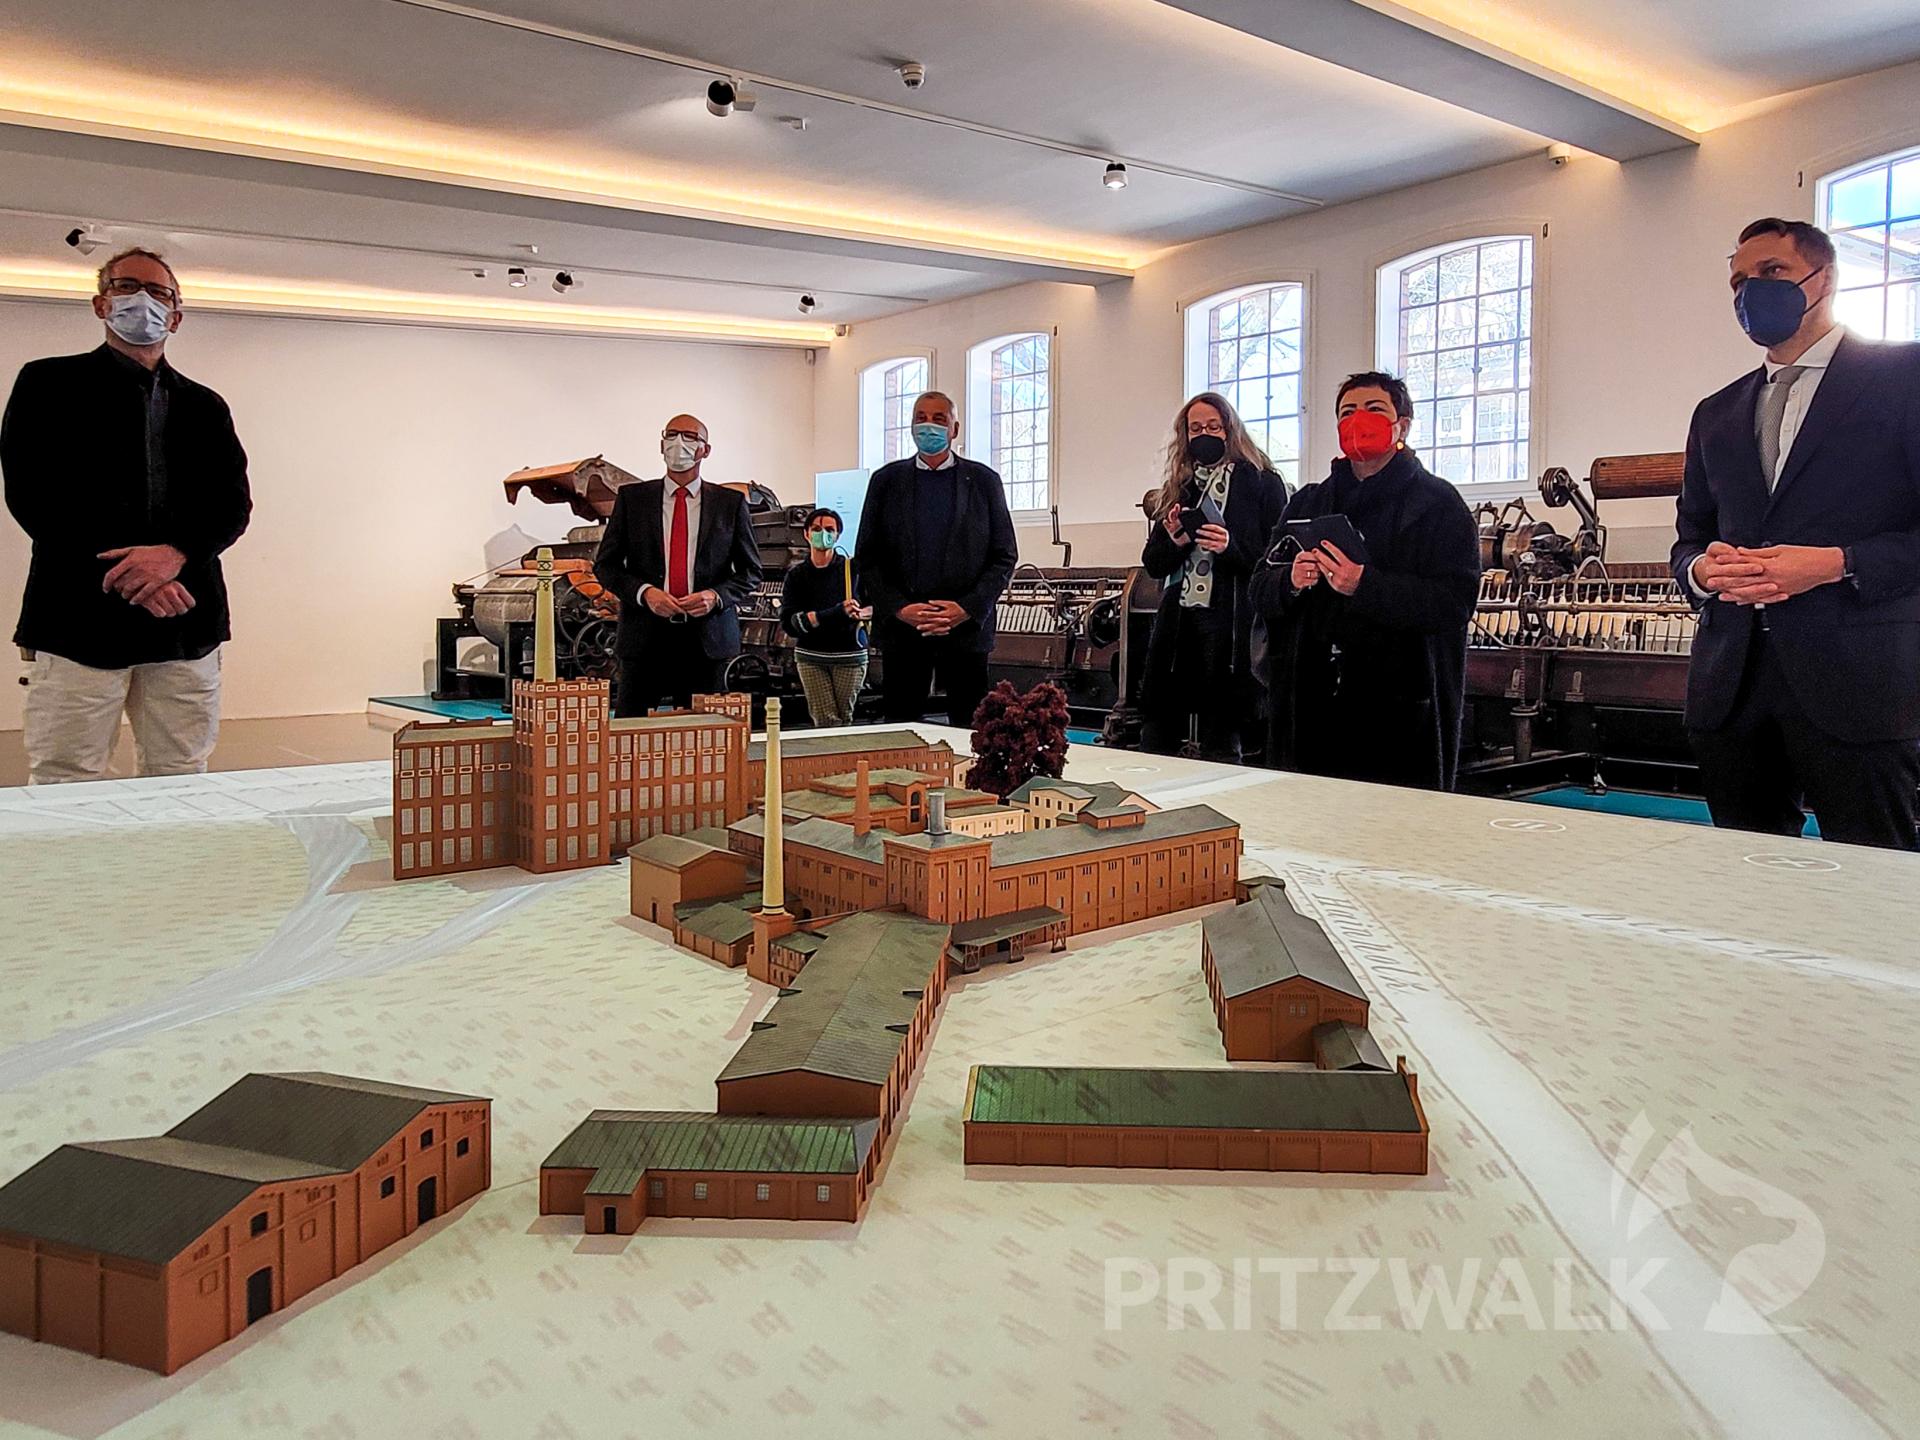 Ein neues, interaktives Modul bietet im Museum Einblicke in die Geschichte der Stadt Pritzwalk. Foto: Beate Vogel